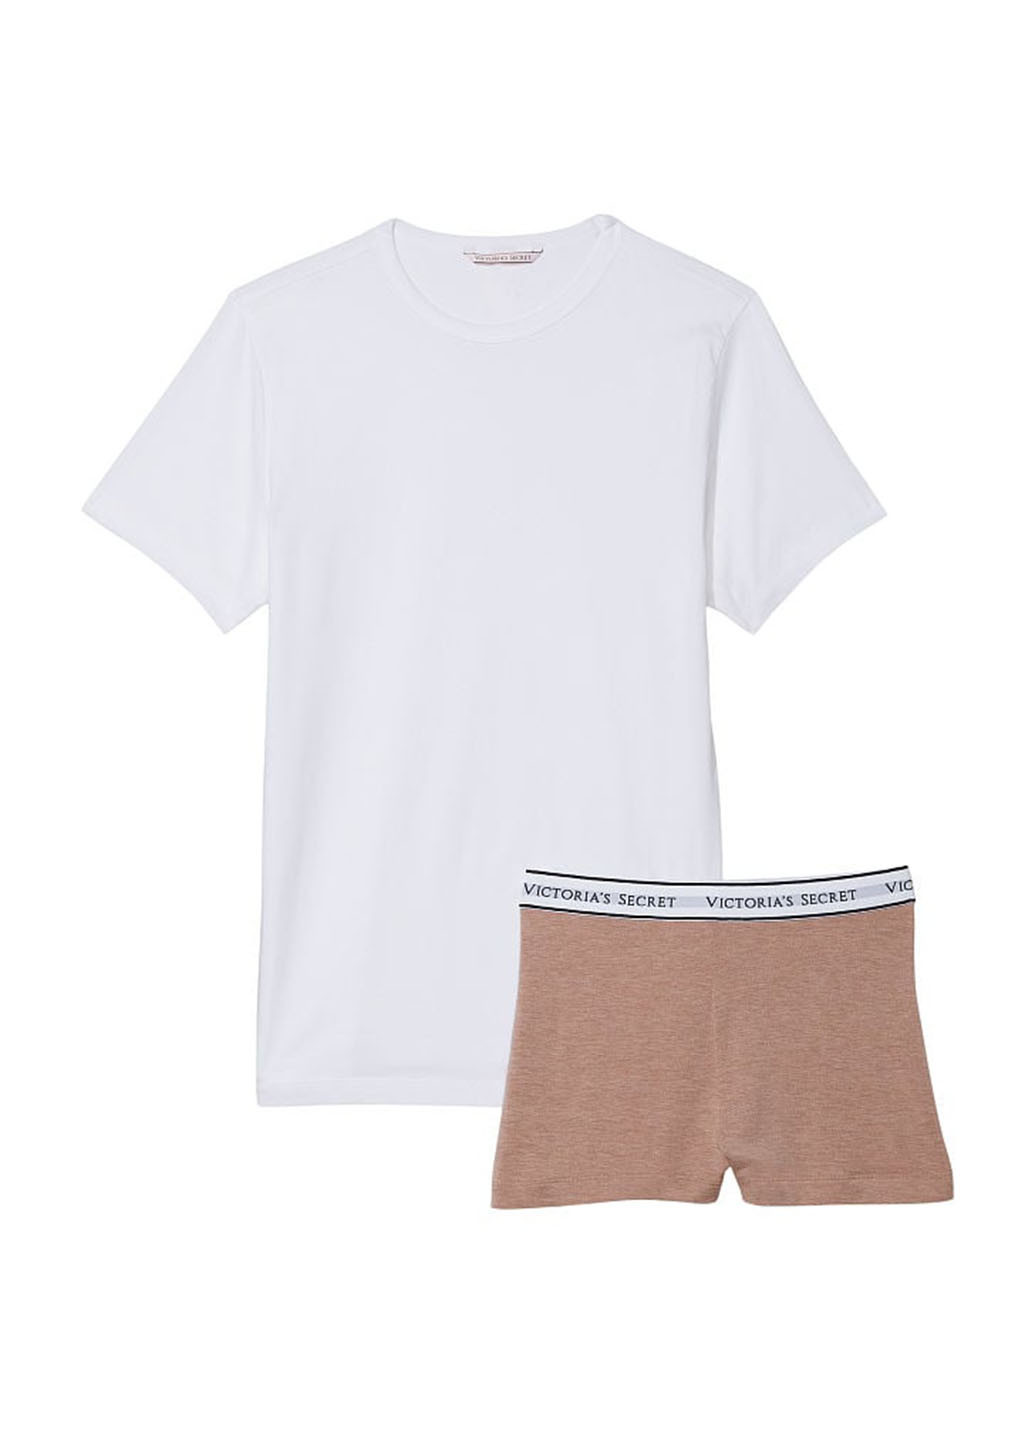 Комбінована всесезон піжама (футболка. шорти) футболка + шорти Victoria's Secret